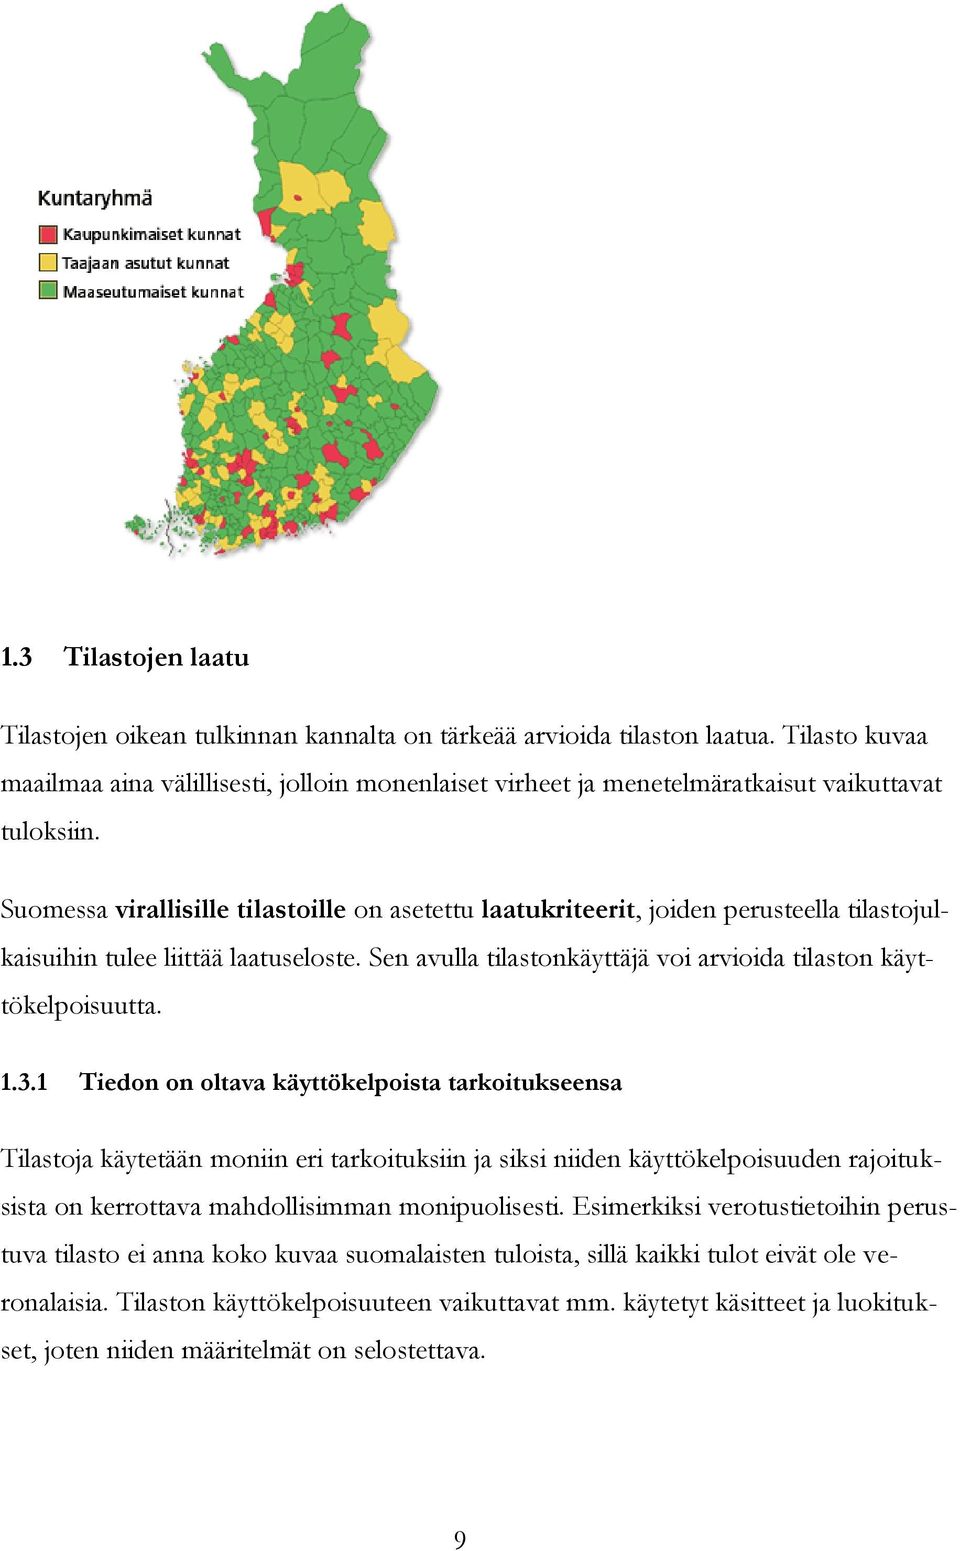 Suomessa virallisille tilastoille on asetettu laatukriteerit, joiden perusteella tilastojulkaisuihin tulee liittää laatuseloste. Sen avulla tilastonkäyttäjä voi arvioida tilaston käyttökelpoisuutta.